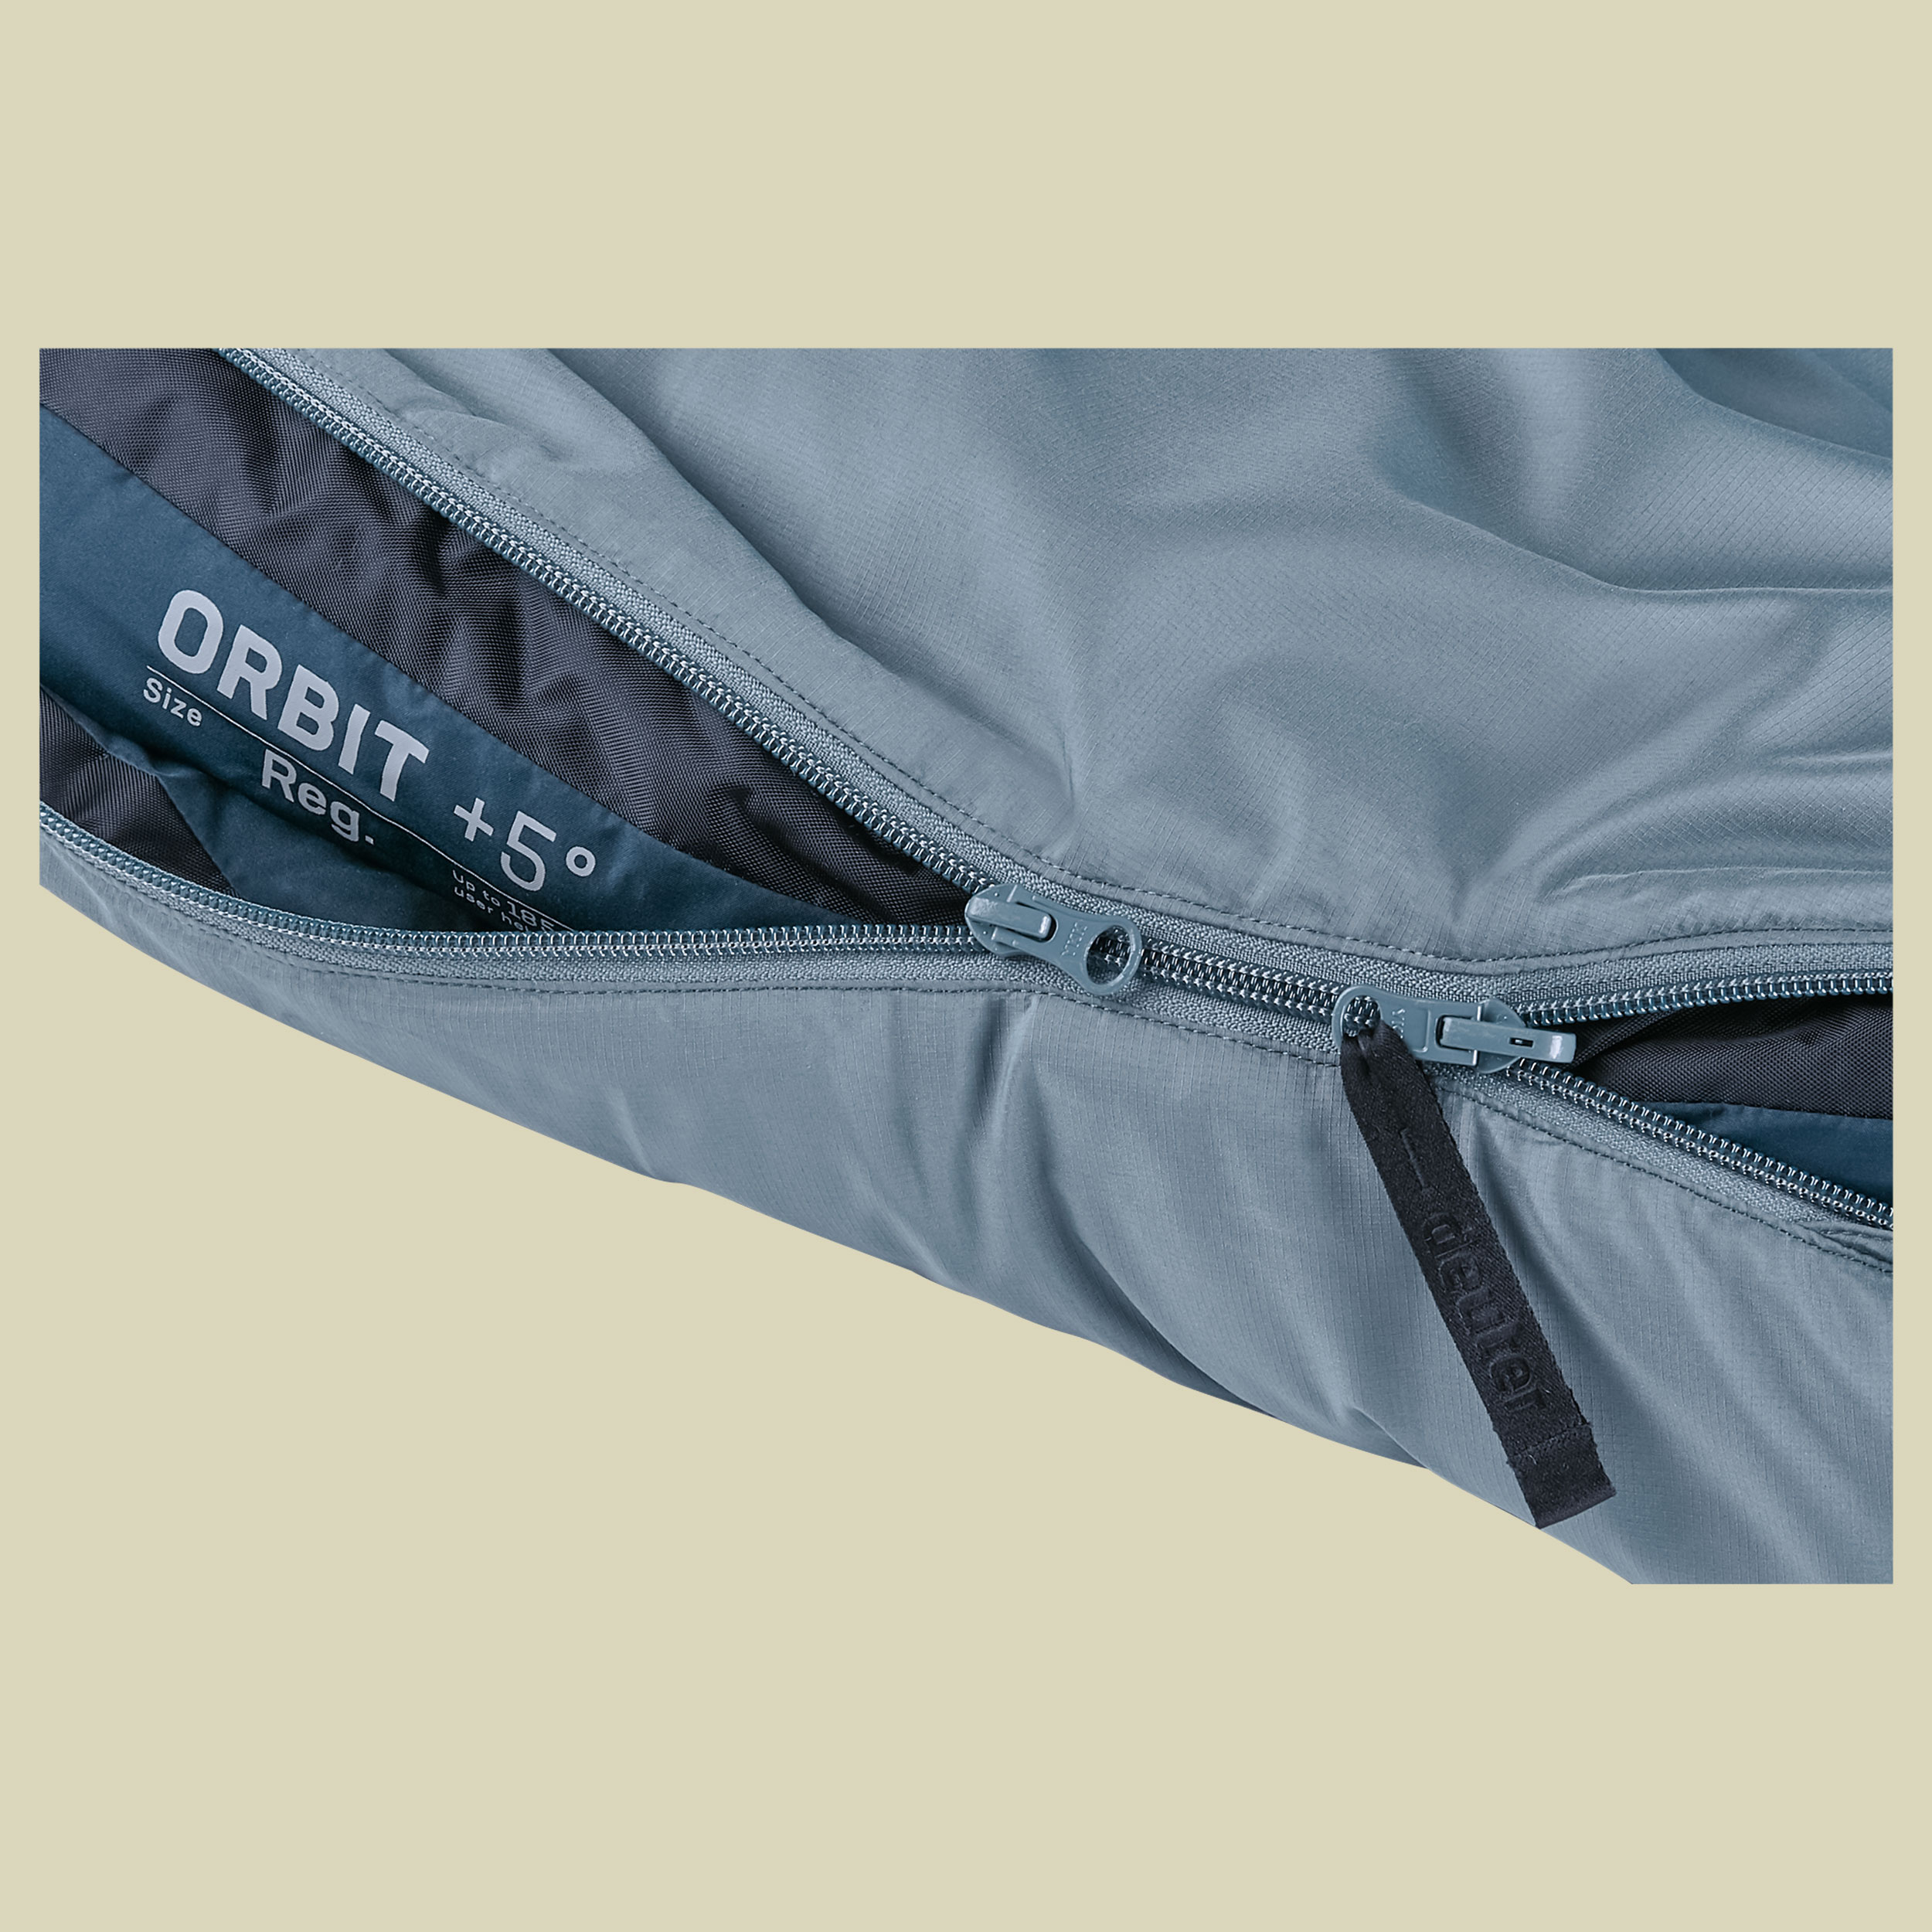 Orbit +5 bis Körpergröße 185 cm Farbe shale-ink, Reißverschluss links